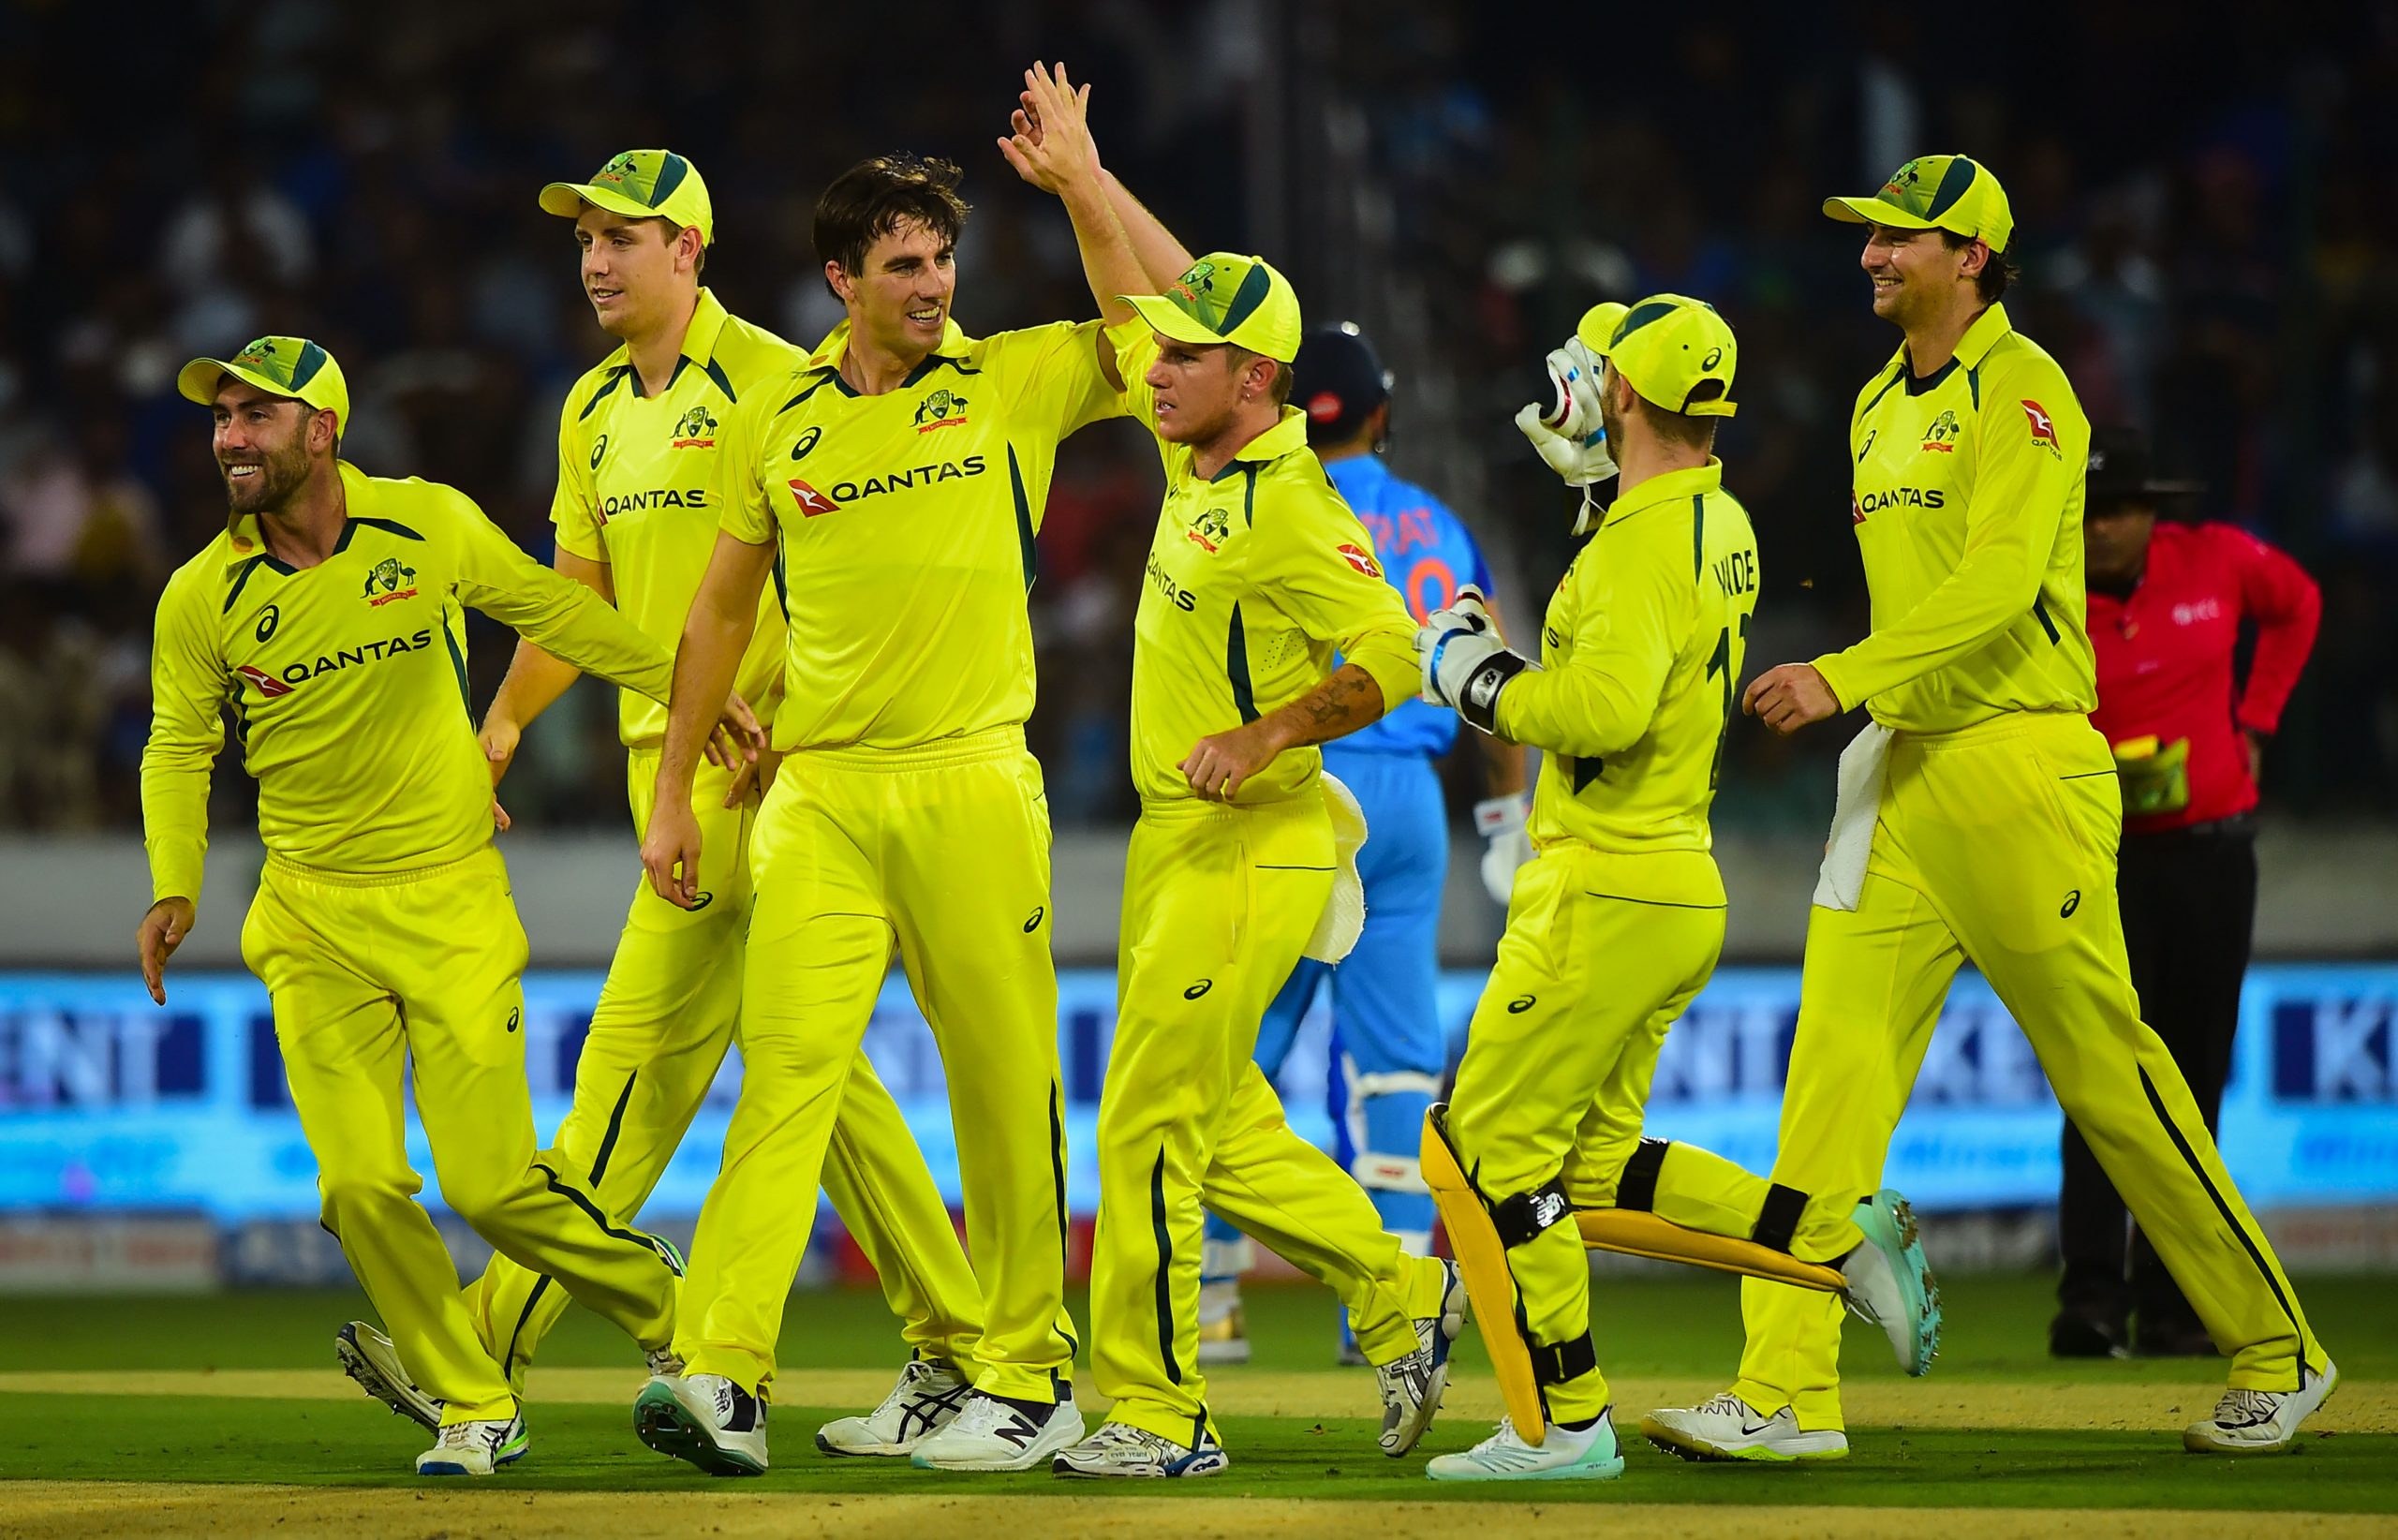 Pat Cummins named Australia ODI captain, David Warner, Steve Smith sidelined